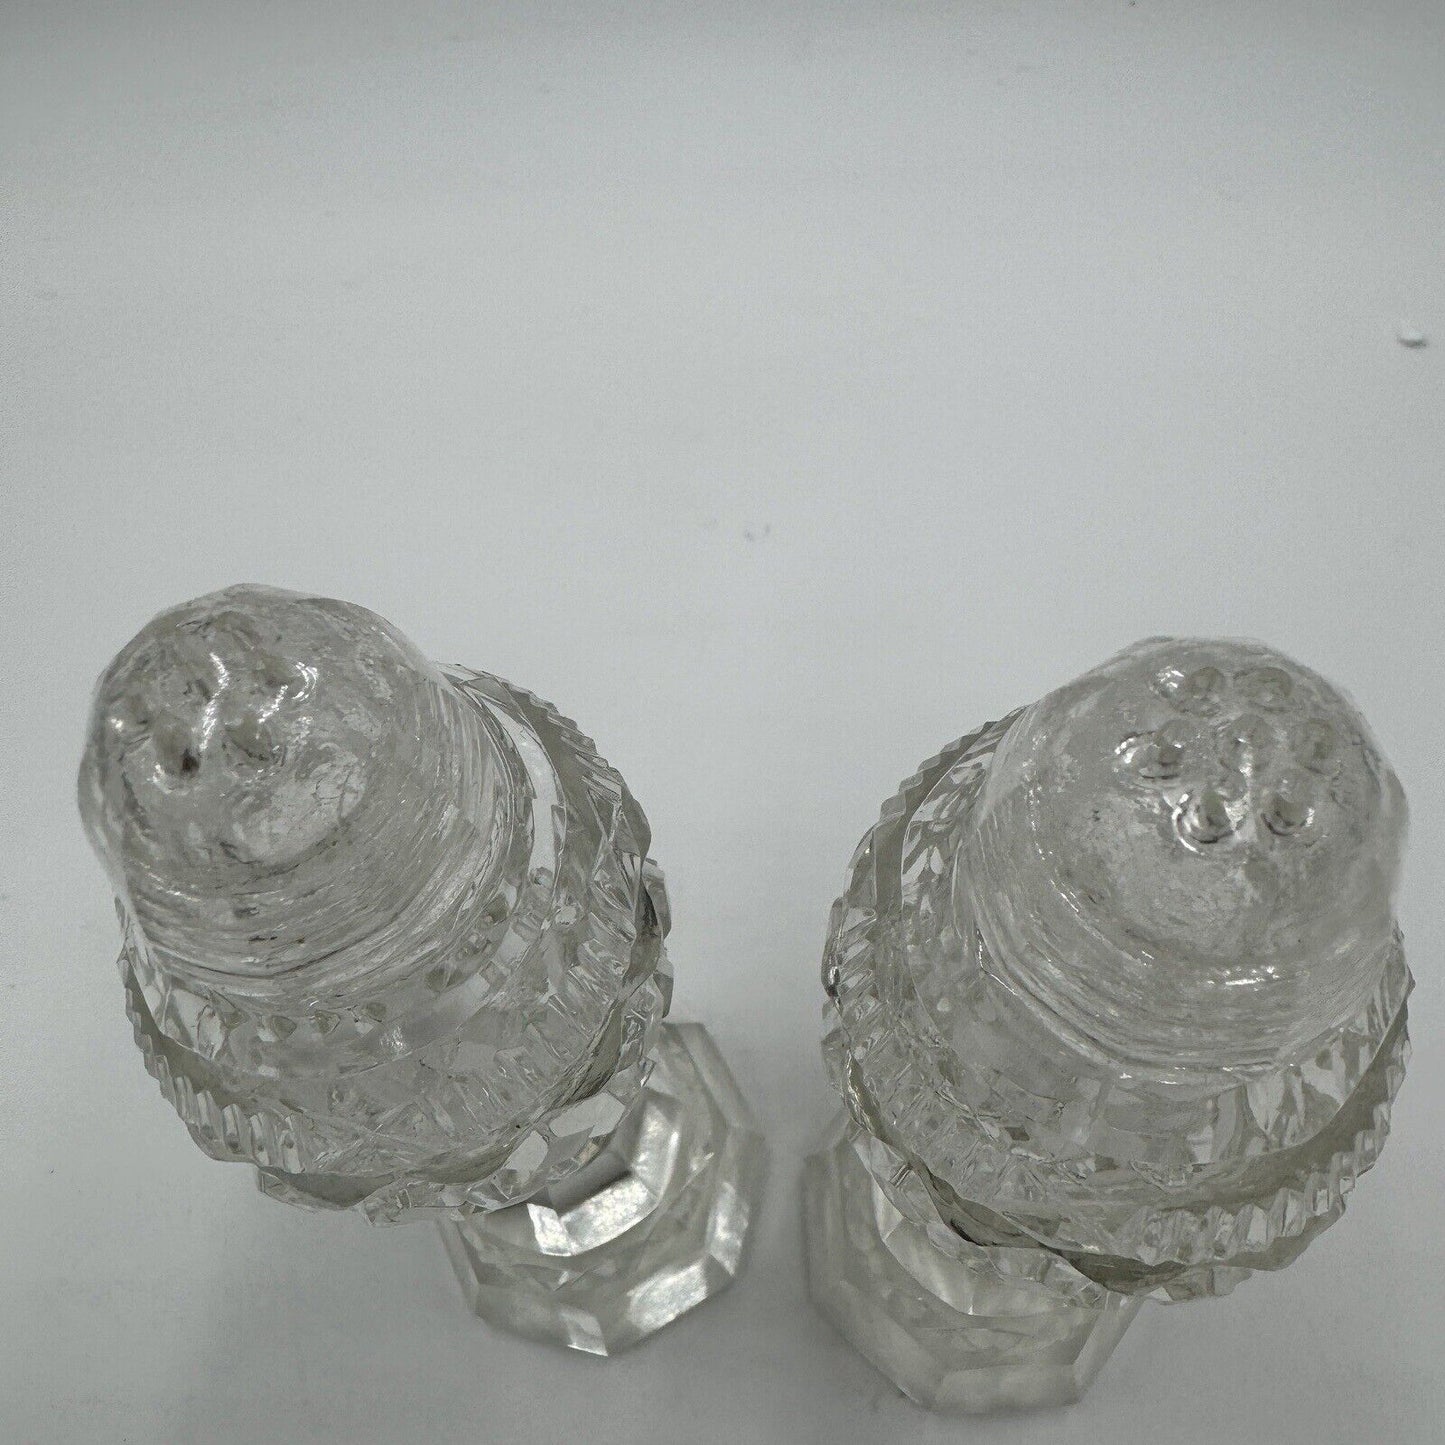 Antique Bohemian Czech Cut Glass Pedestal Salt & Pepper Shakers 6”H